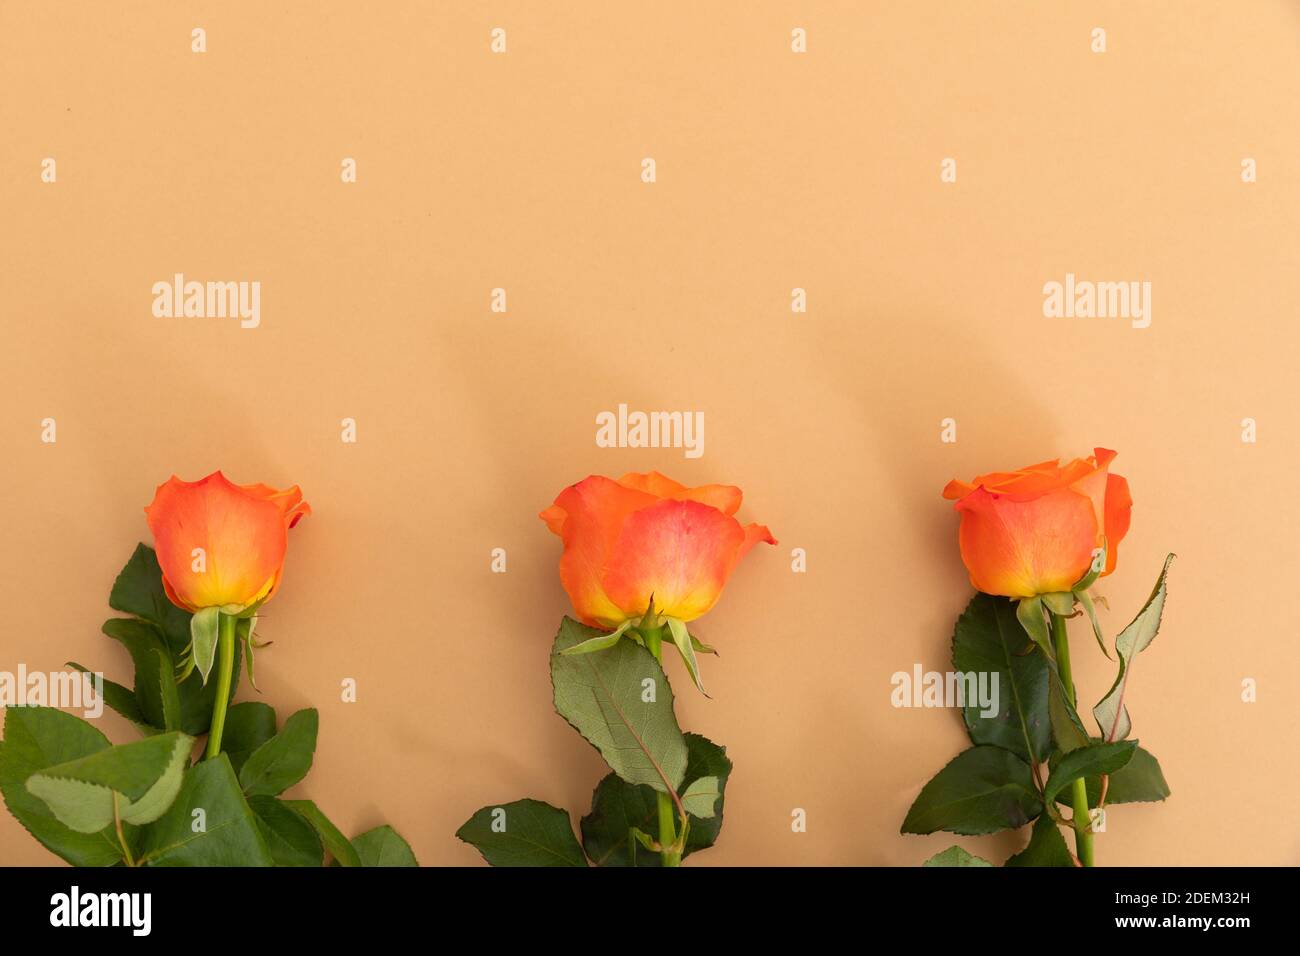 Three orange roses lying separately from bottom on orange background Stock Photo